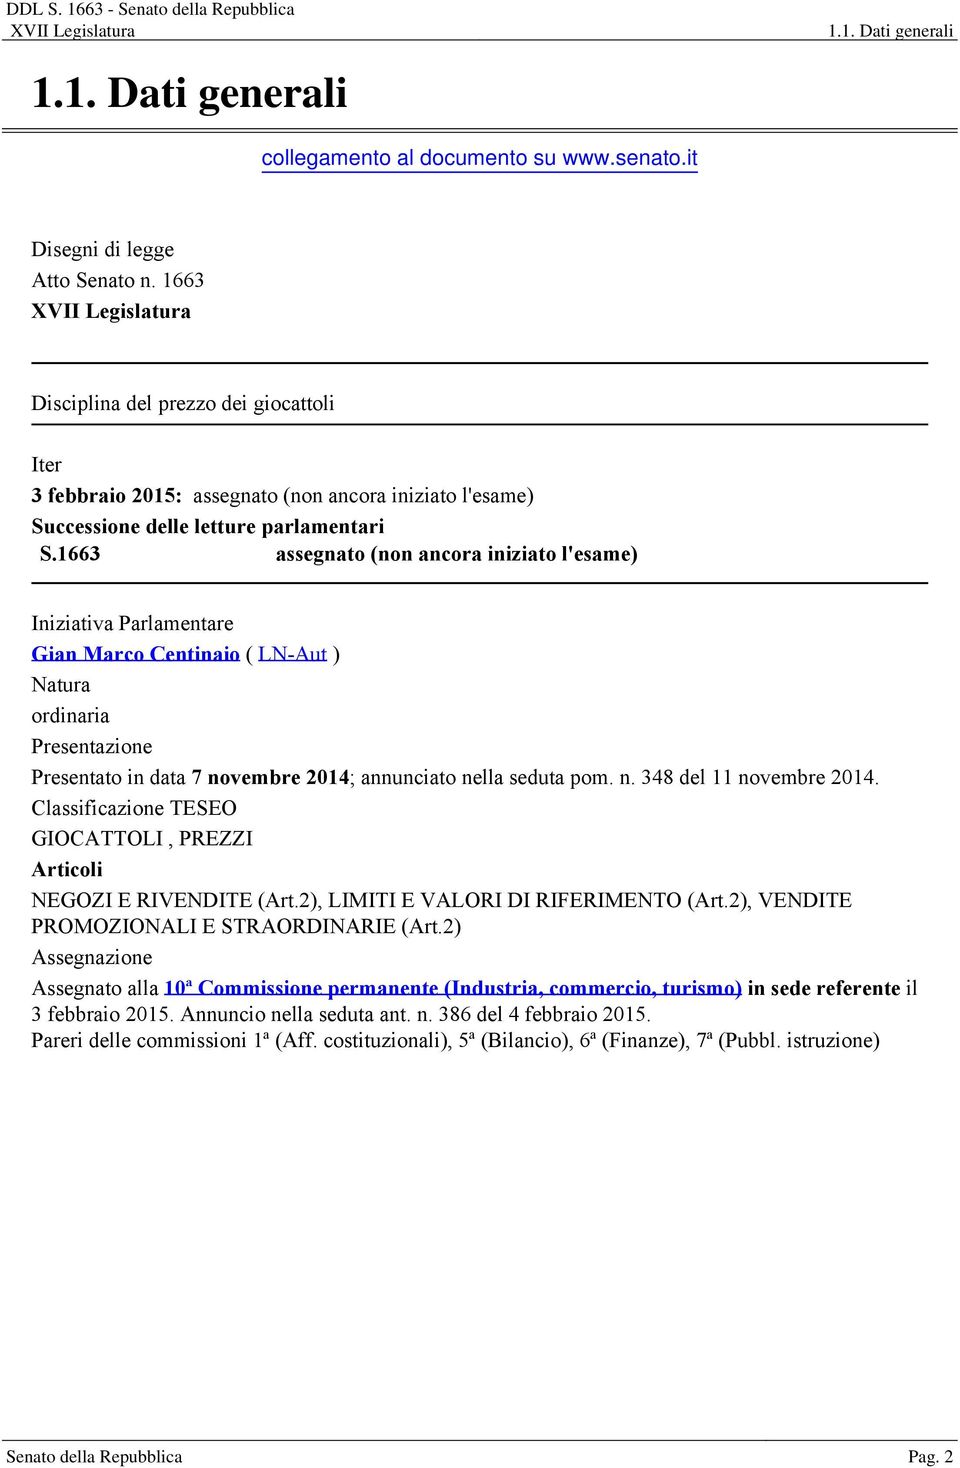 1663 assegnato (non ancora iniziato l'esame) Iniziativa Parlamentare Gian Marco Centinaio ( LN-Aut ) Natura ordinaria Presentazione Presentato in data 7 novembre 2014; annunciato nella seduta pom. n. 348 del 11 novembre 2014.